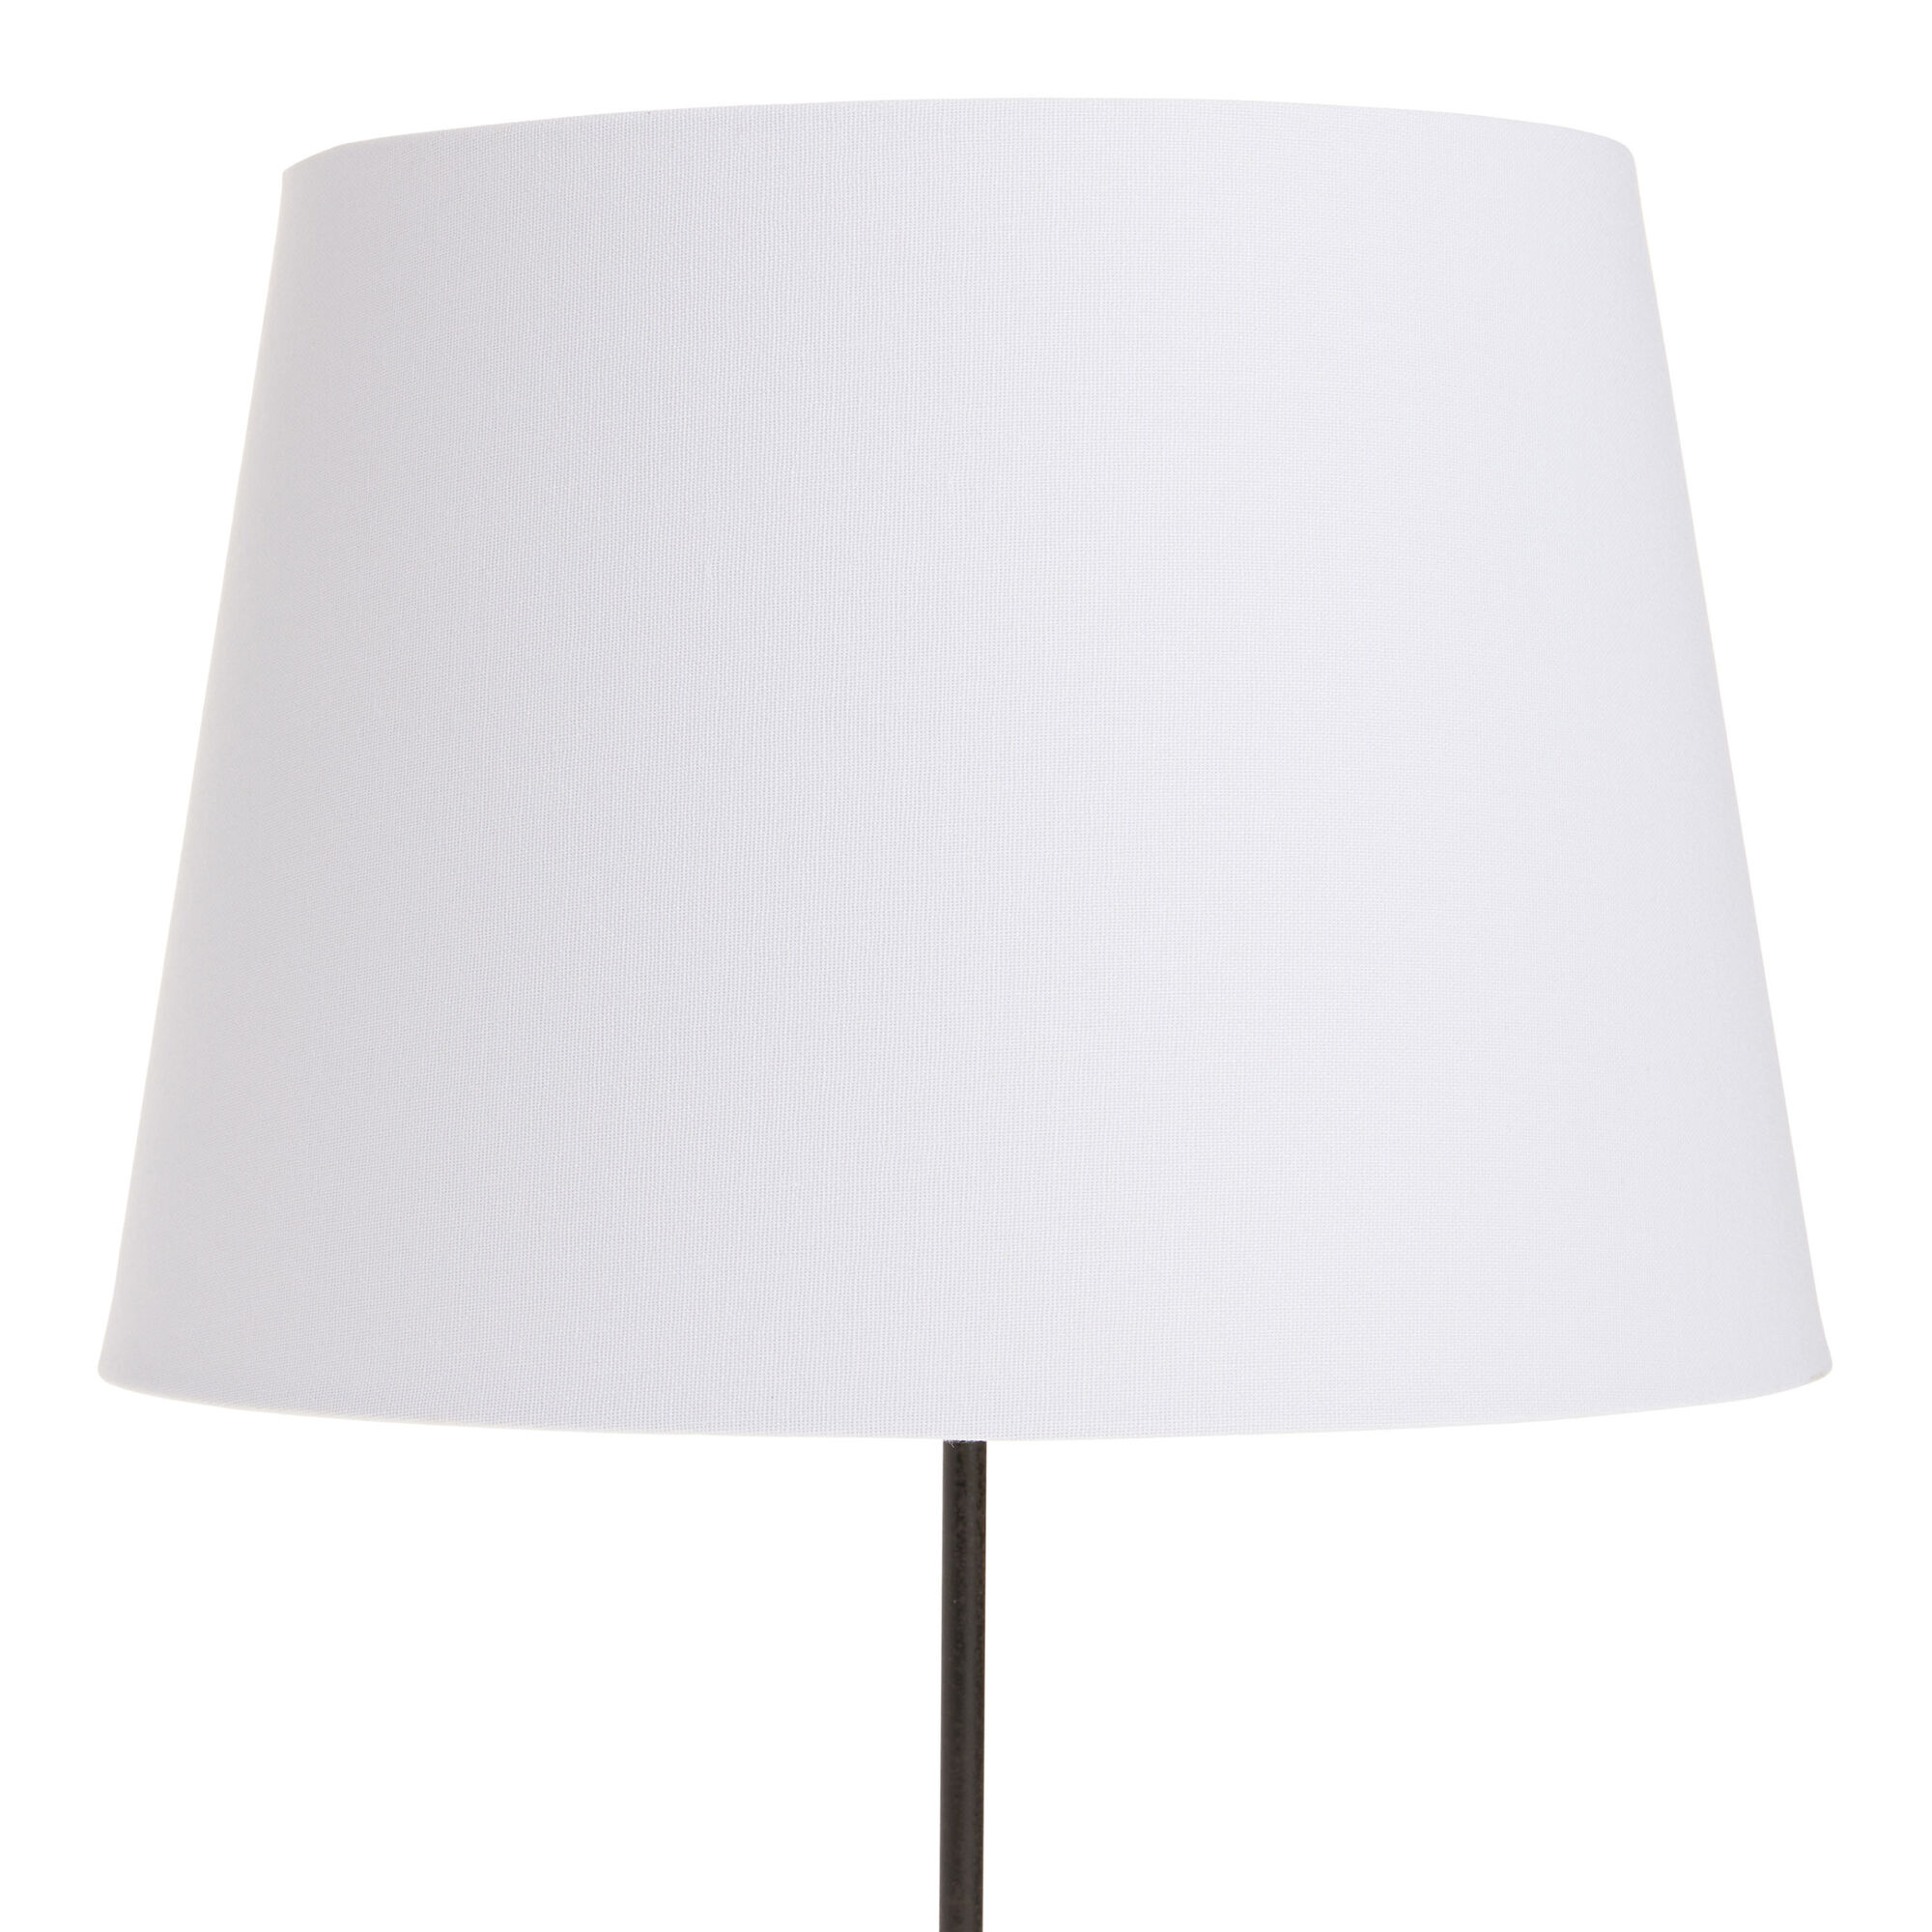 White Linen Table Lamp Shade - World Market